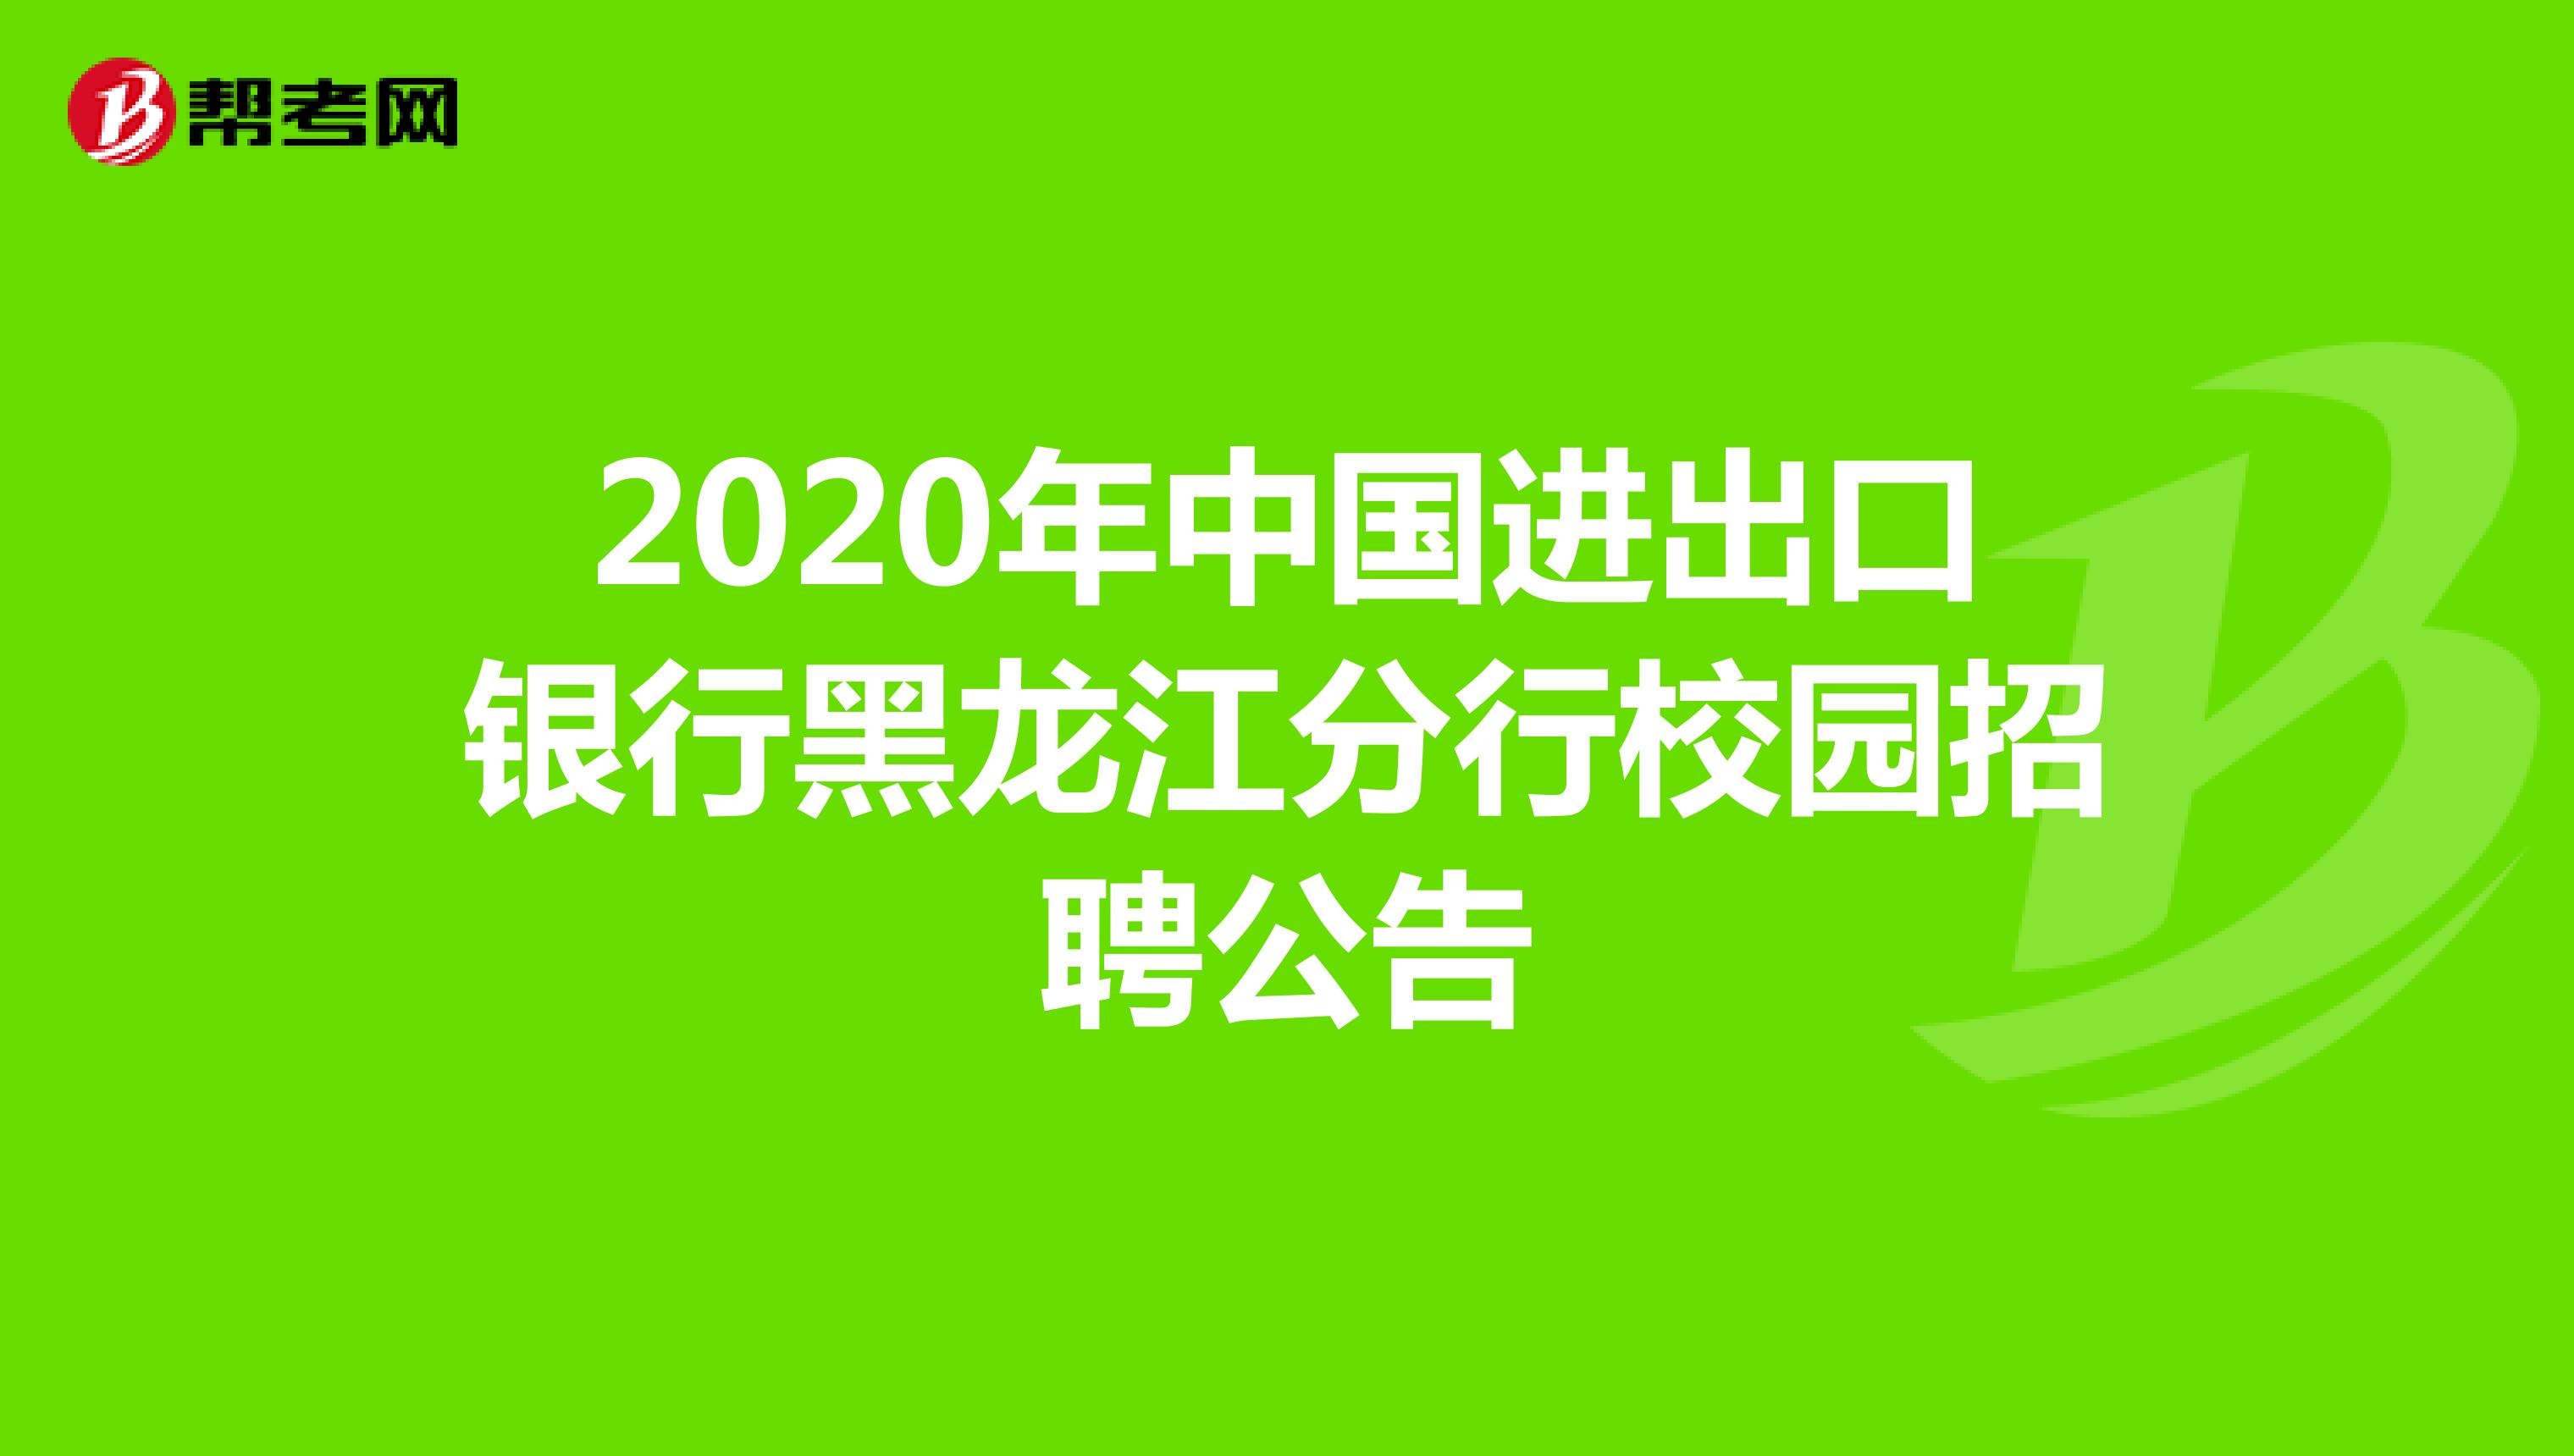 2020年中国进出口银行黑龙江分行校园招聘公告